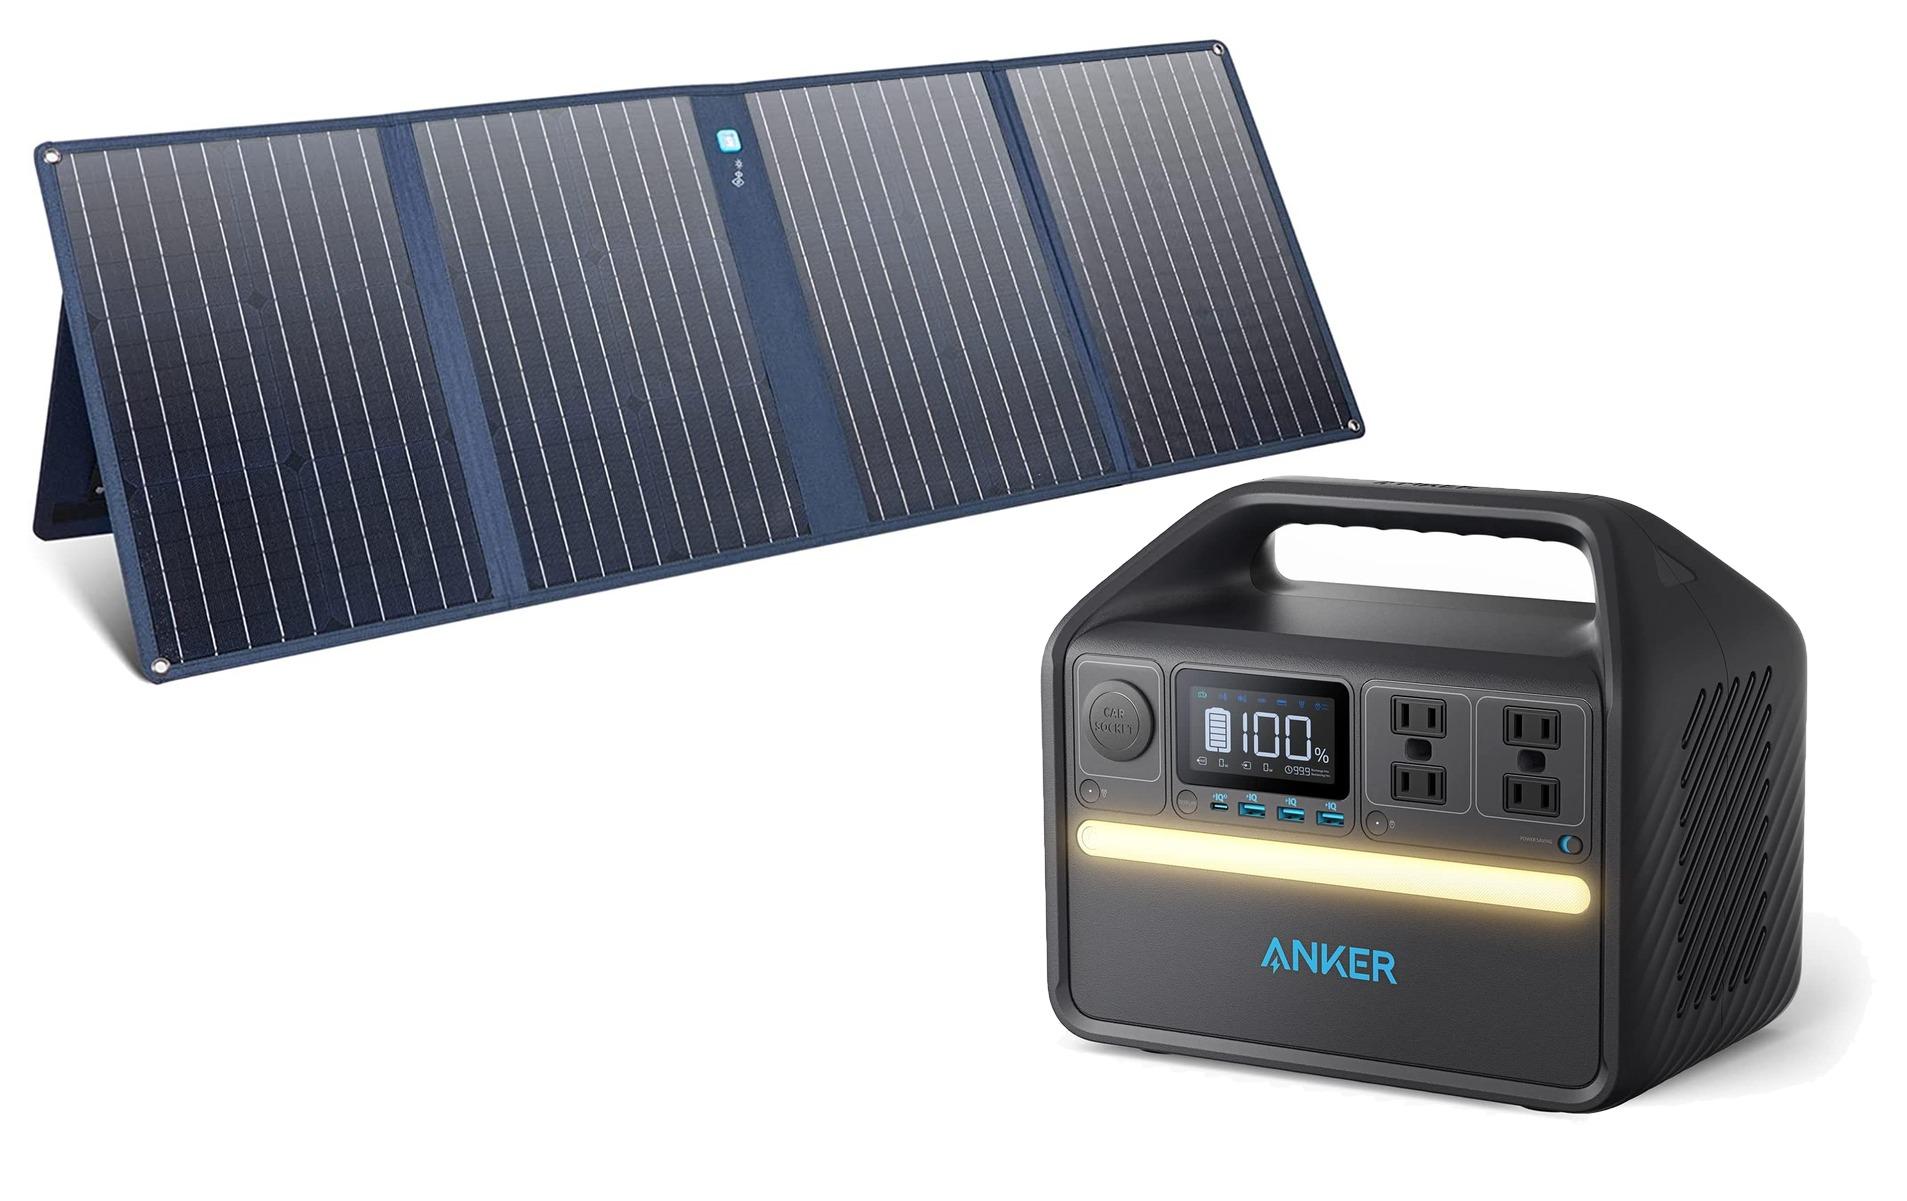 6月から電気代値上げ対策】anker521 ポータブル電源